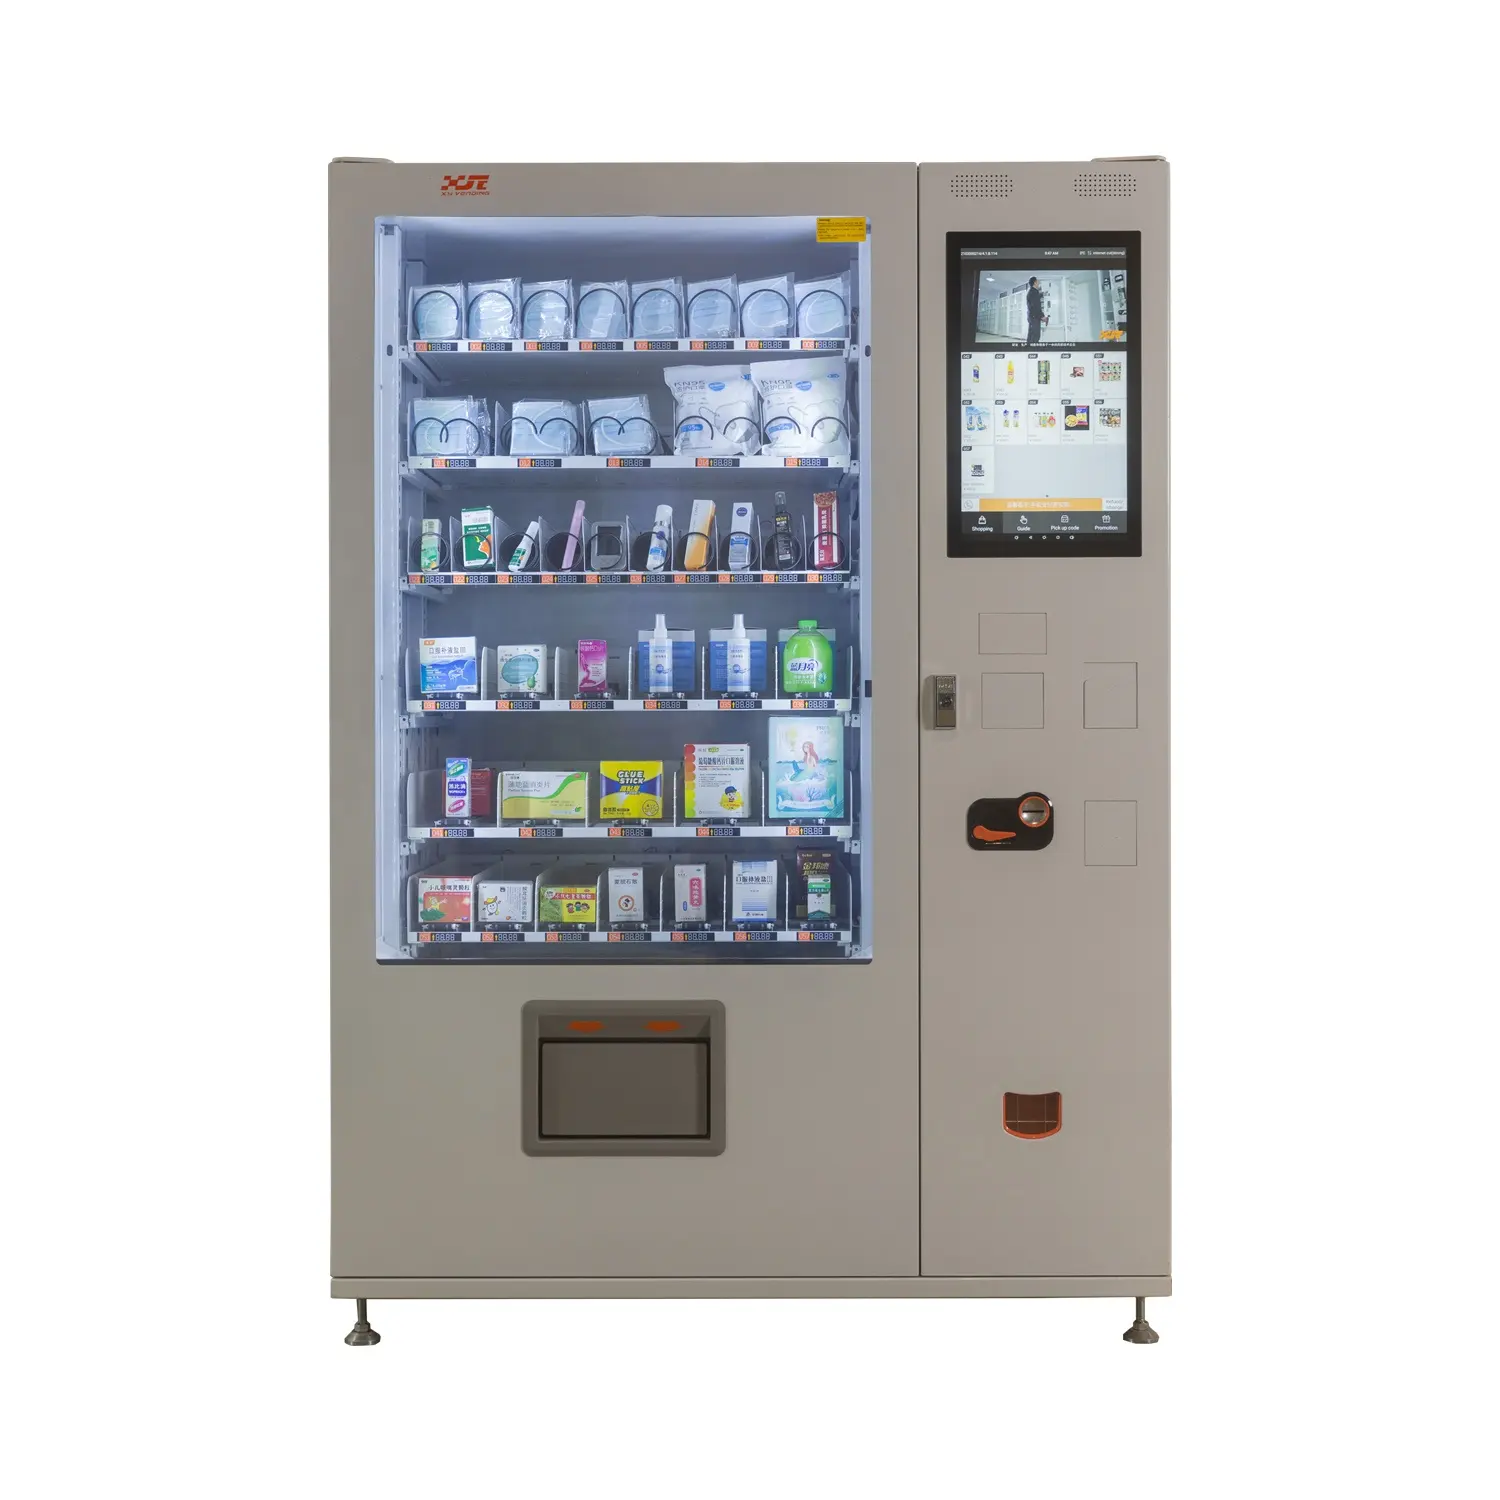 Автоматический торговый автомат XY 24 часа для фармации, распродажа, распродажа, в наличии